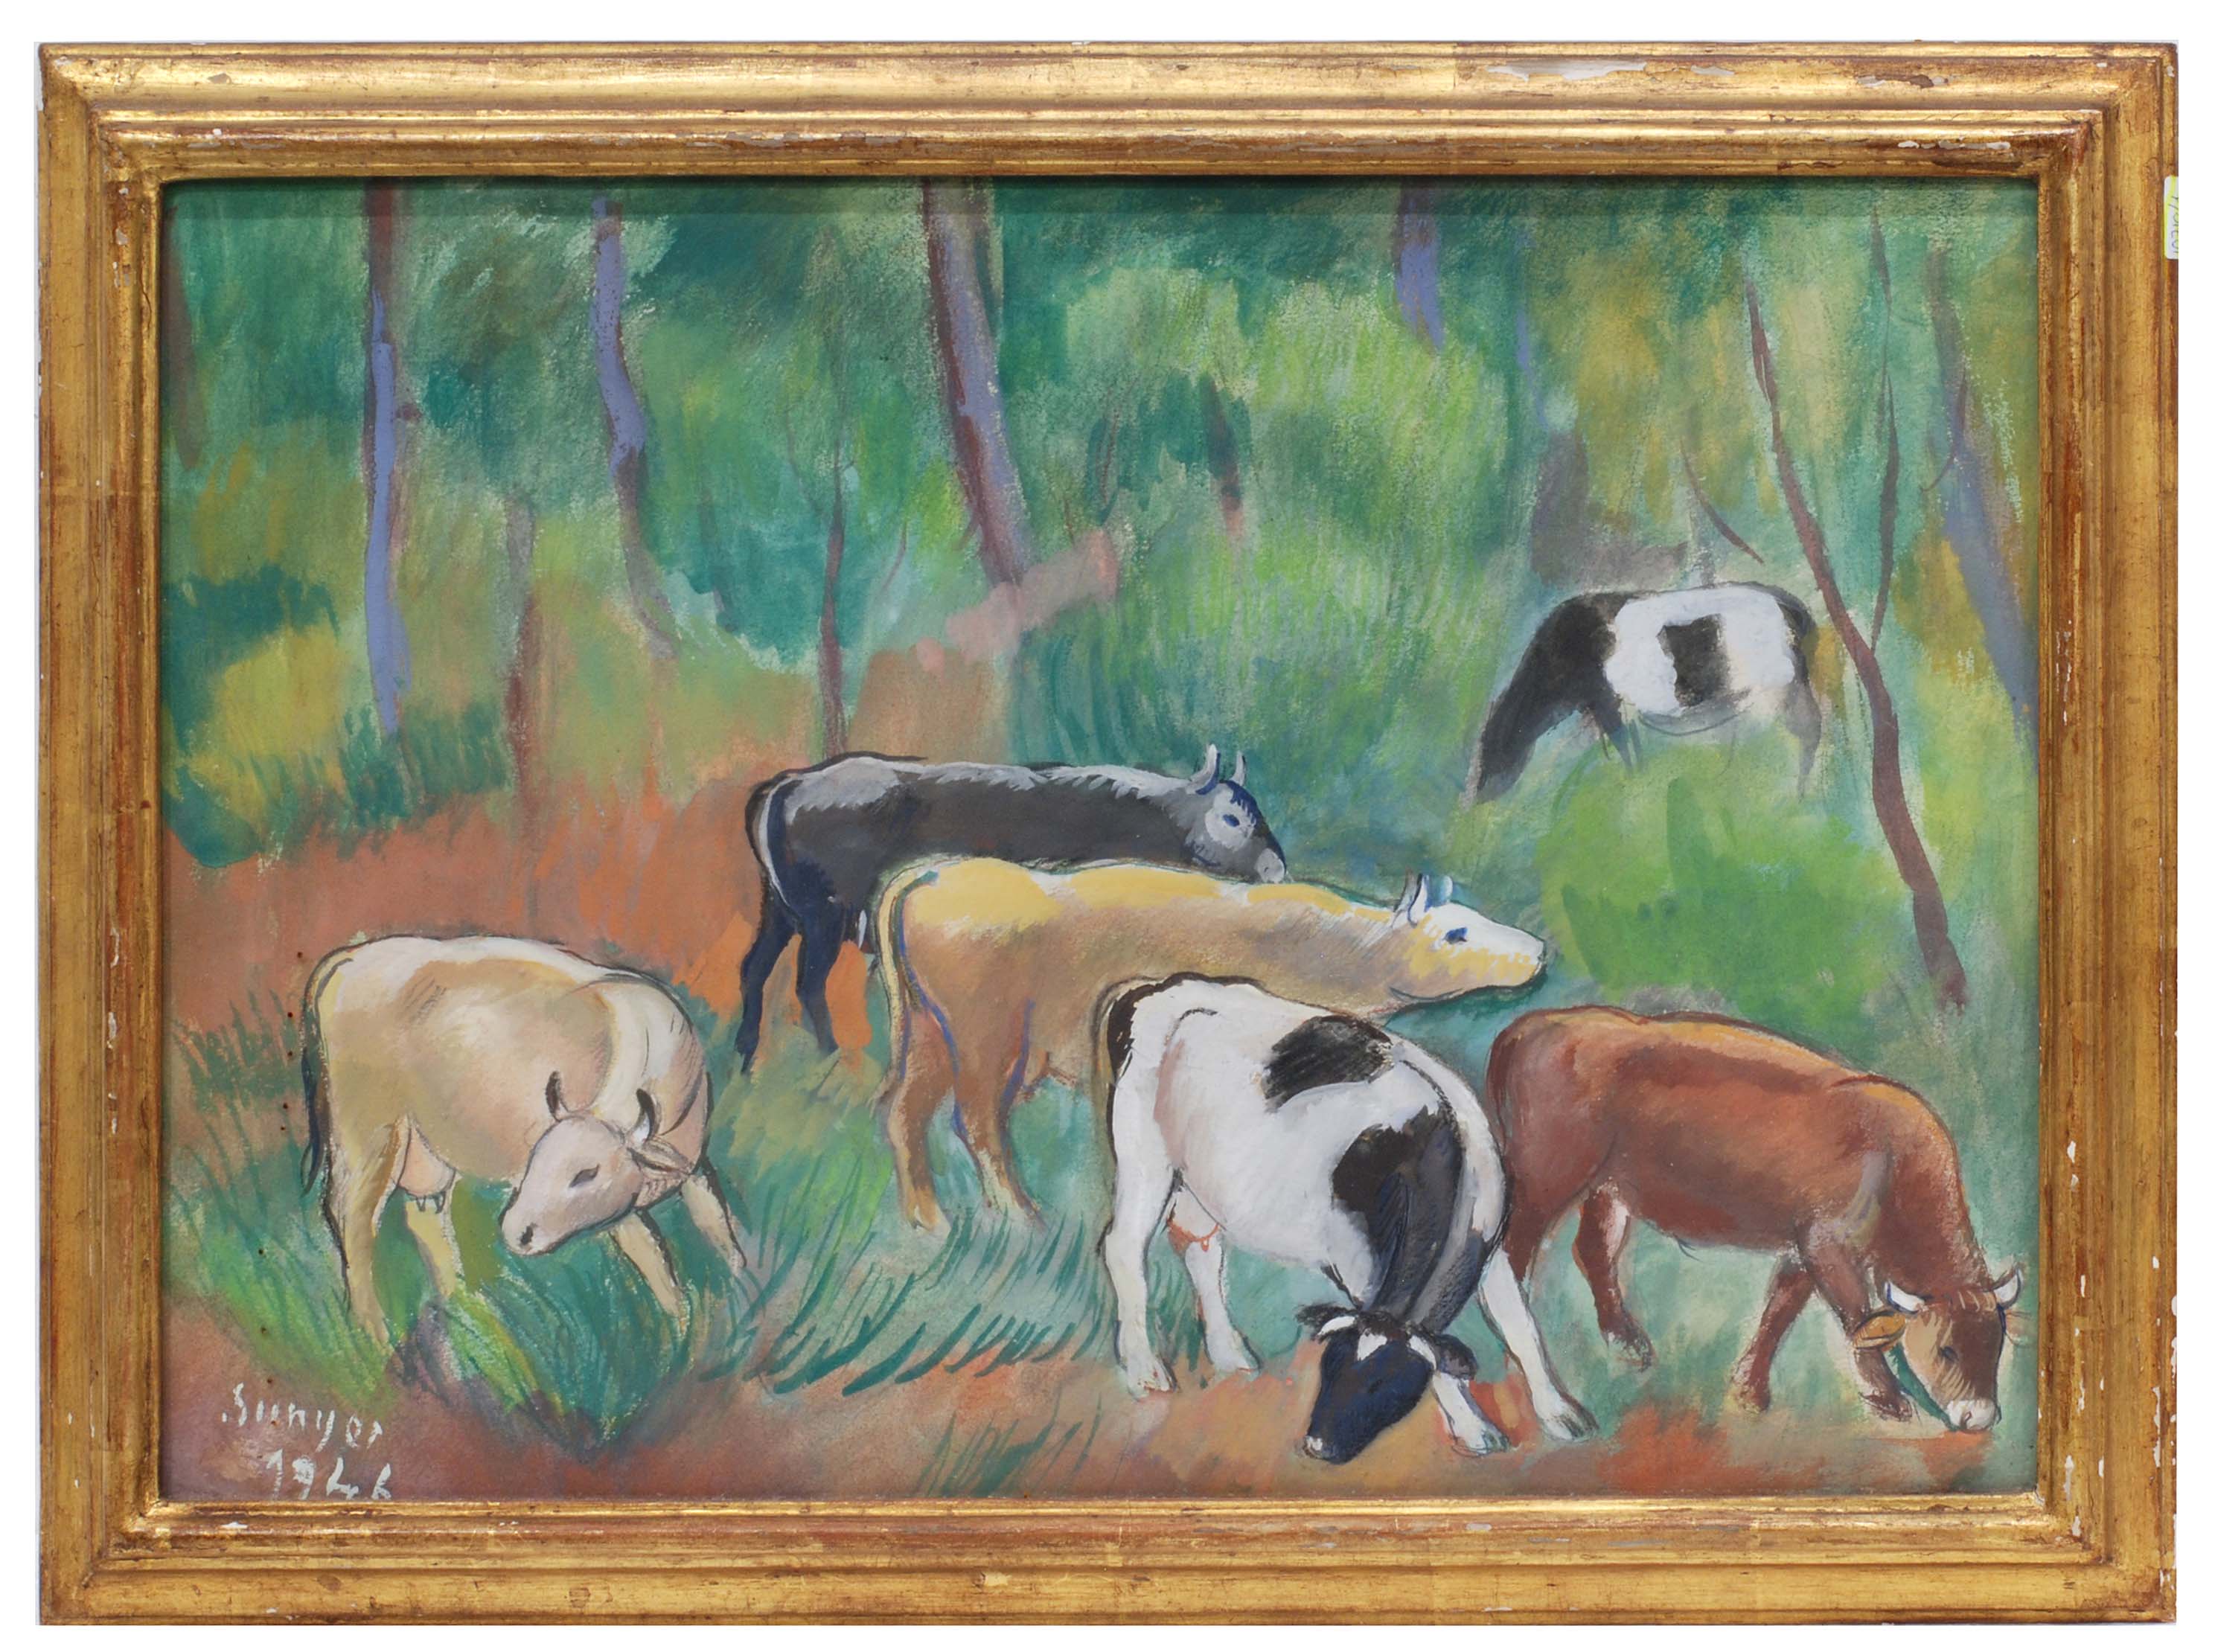 JOAQUIM SUNYER MIRÓ (1874-1956). "COWS GRAZING"